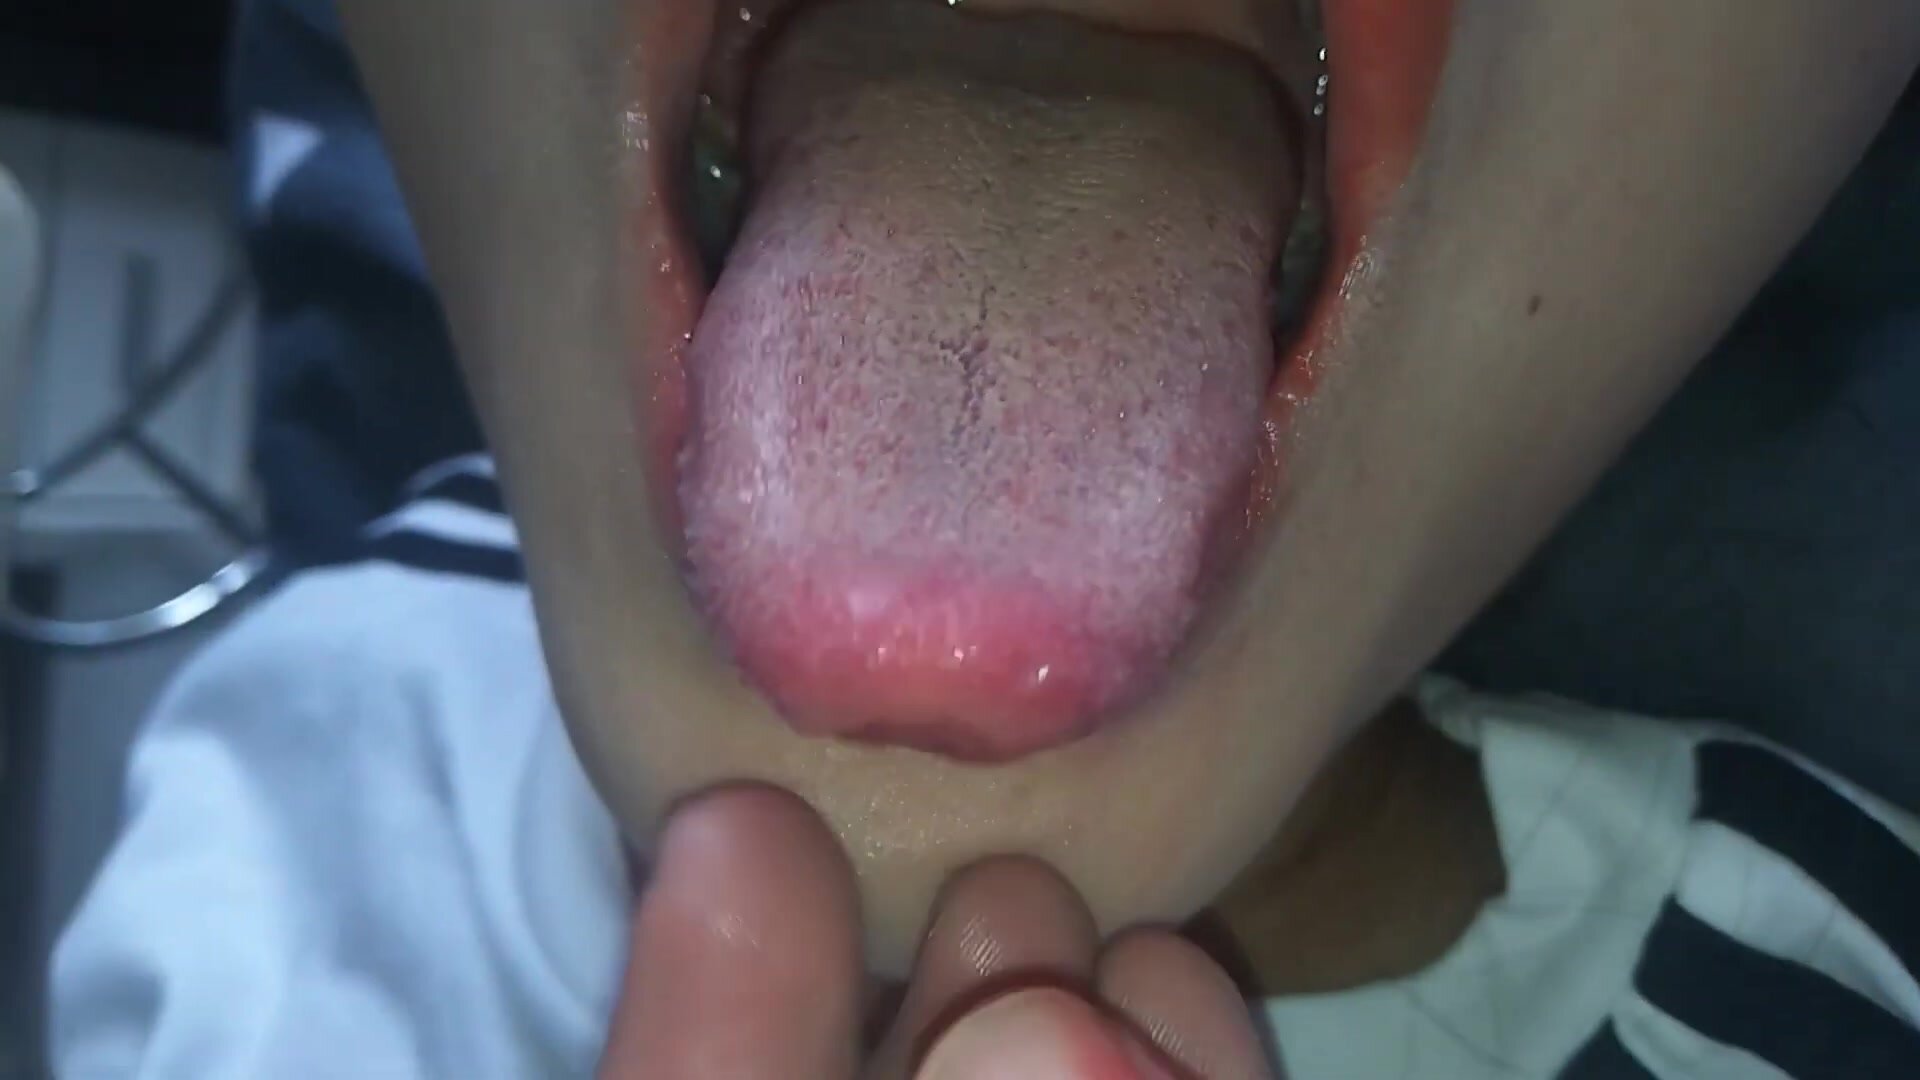 Play girl's tongue